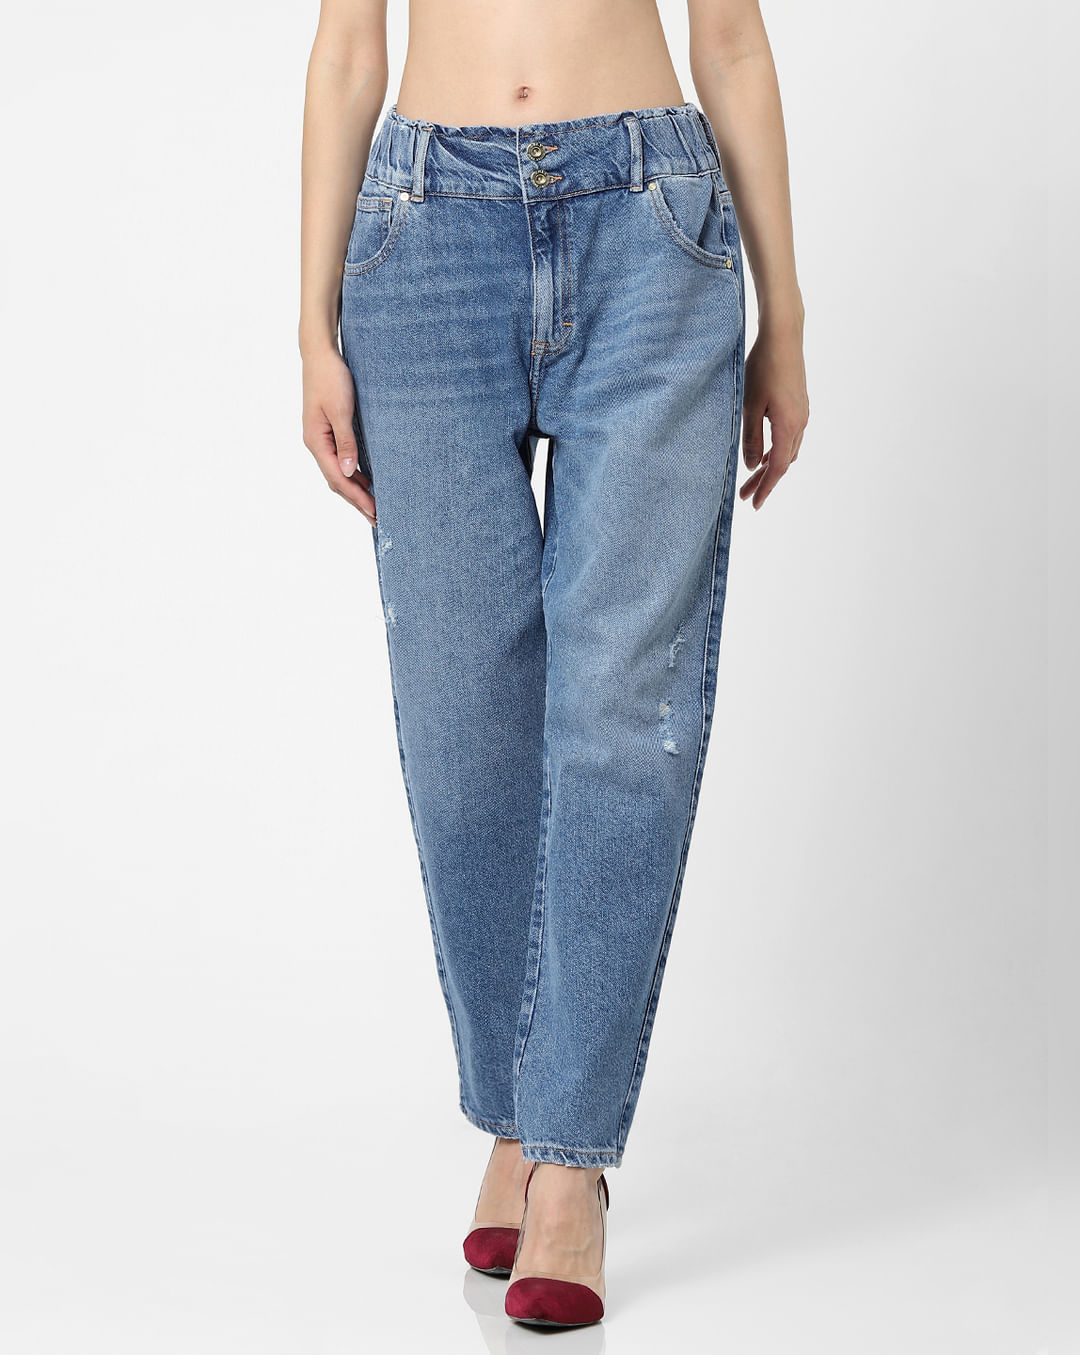 New women's high waist carrot pants were thin jeans pants women